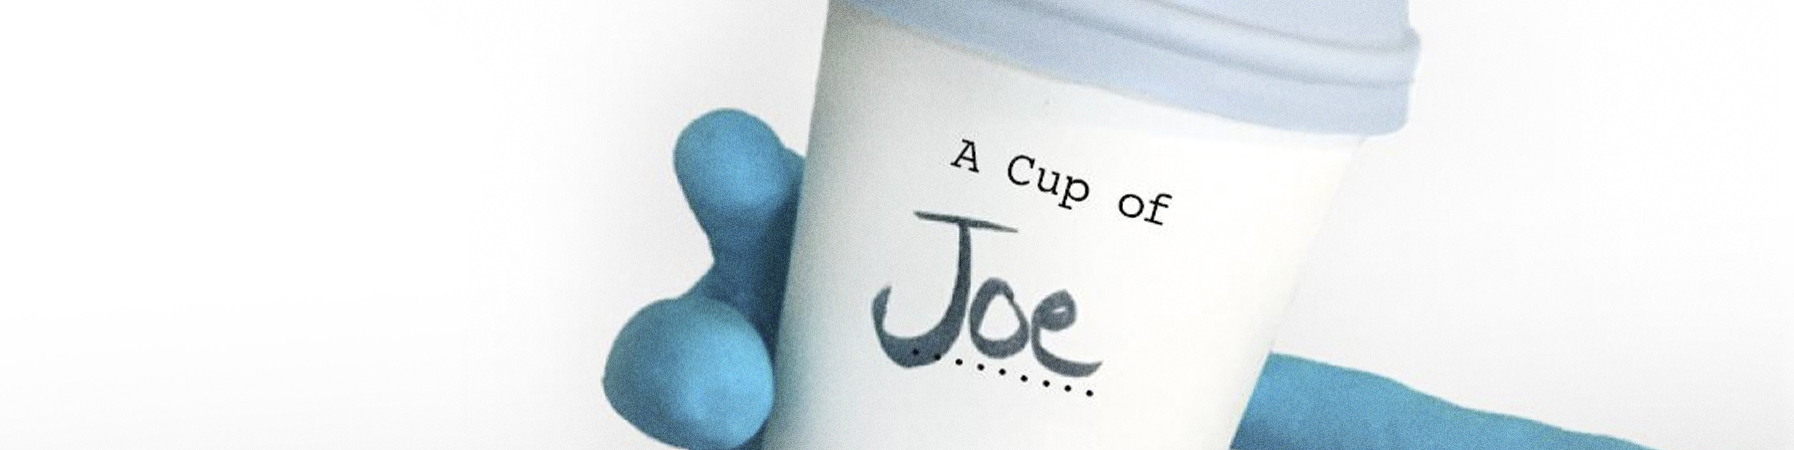 cuppa joe meaning